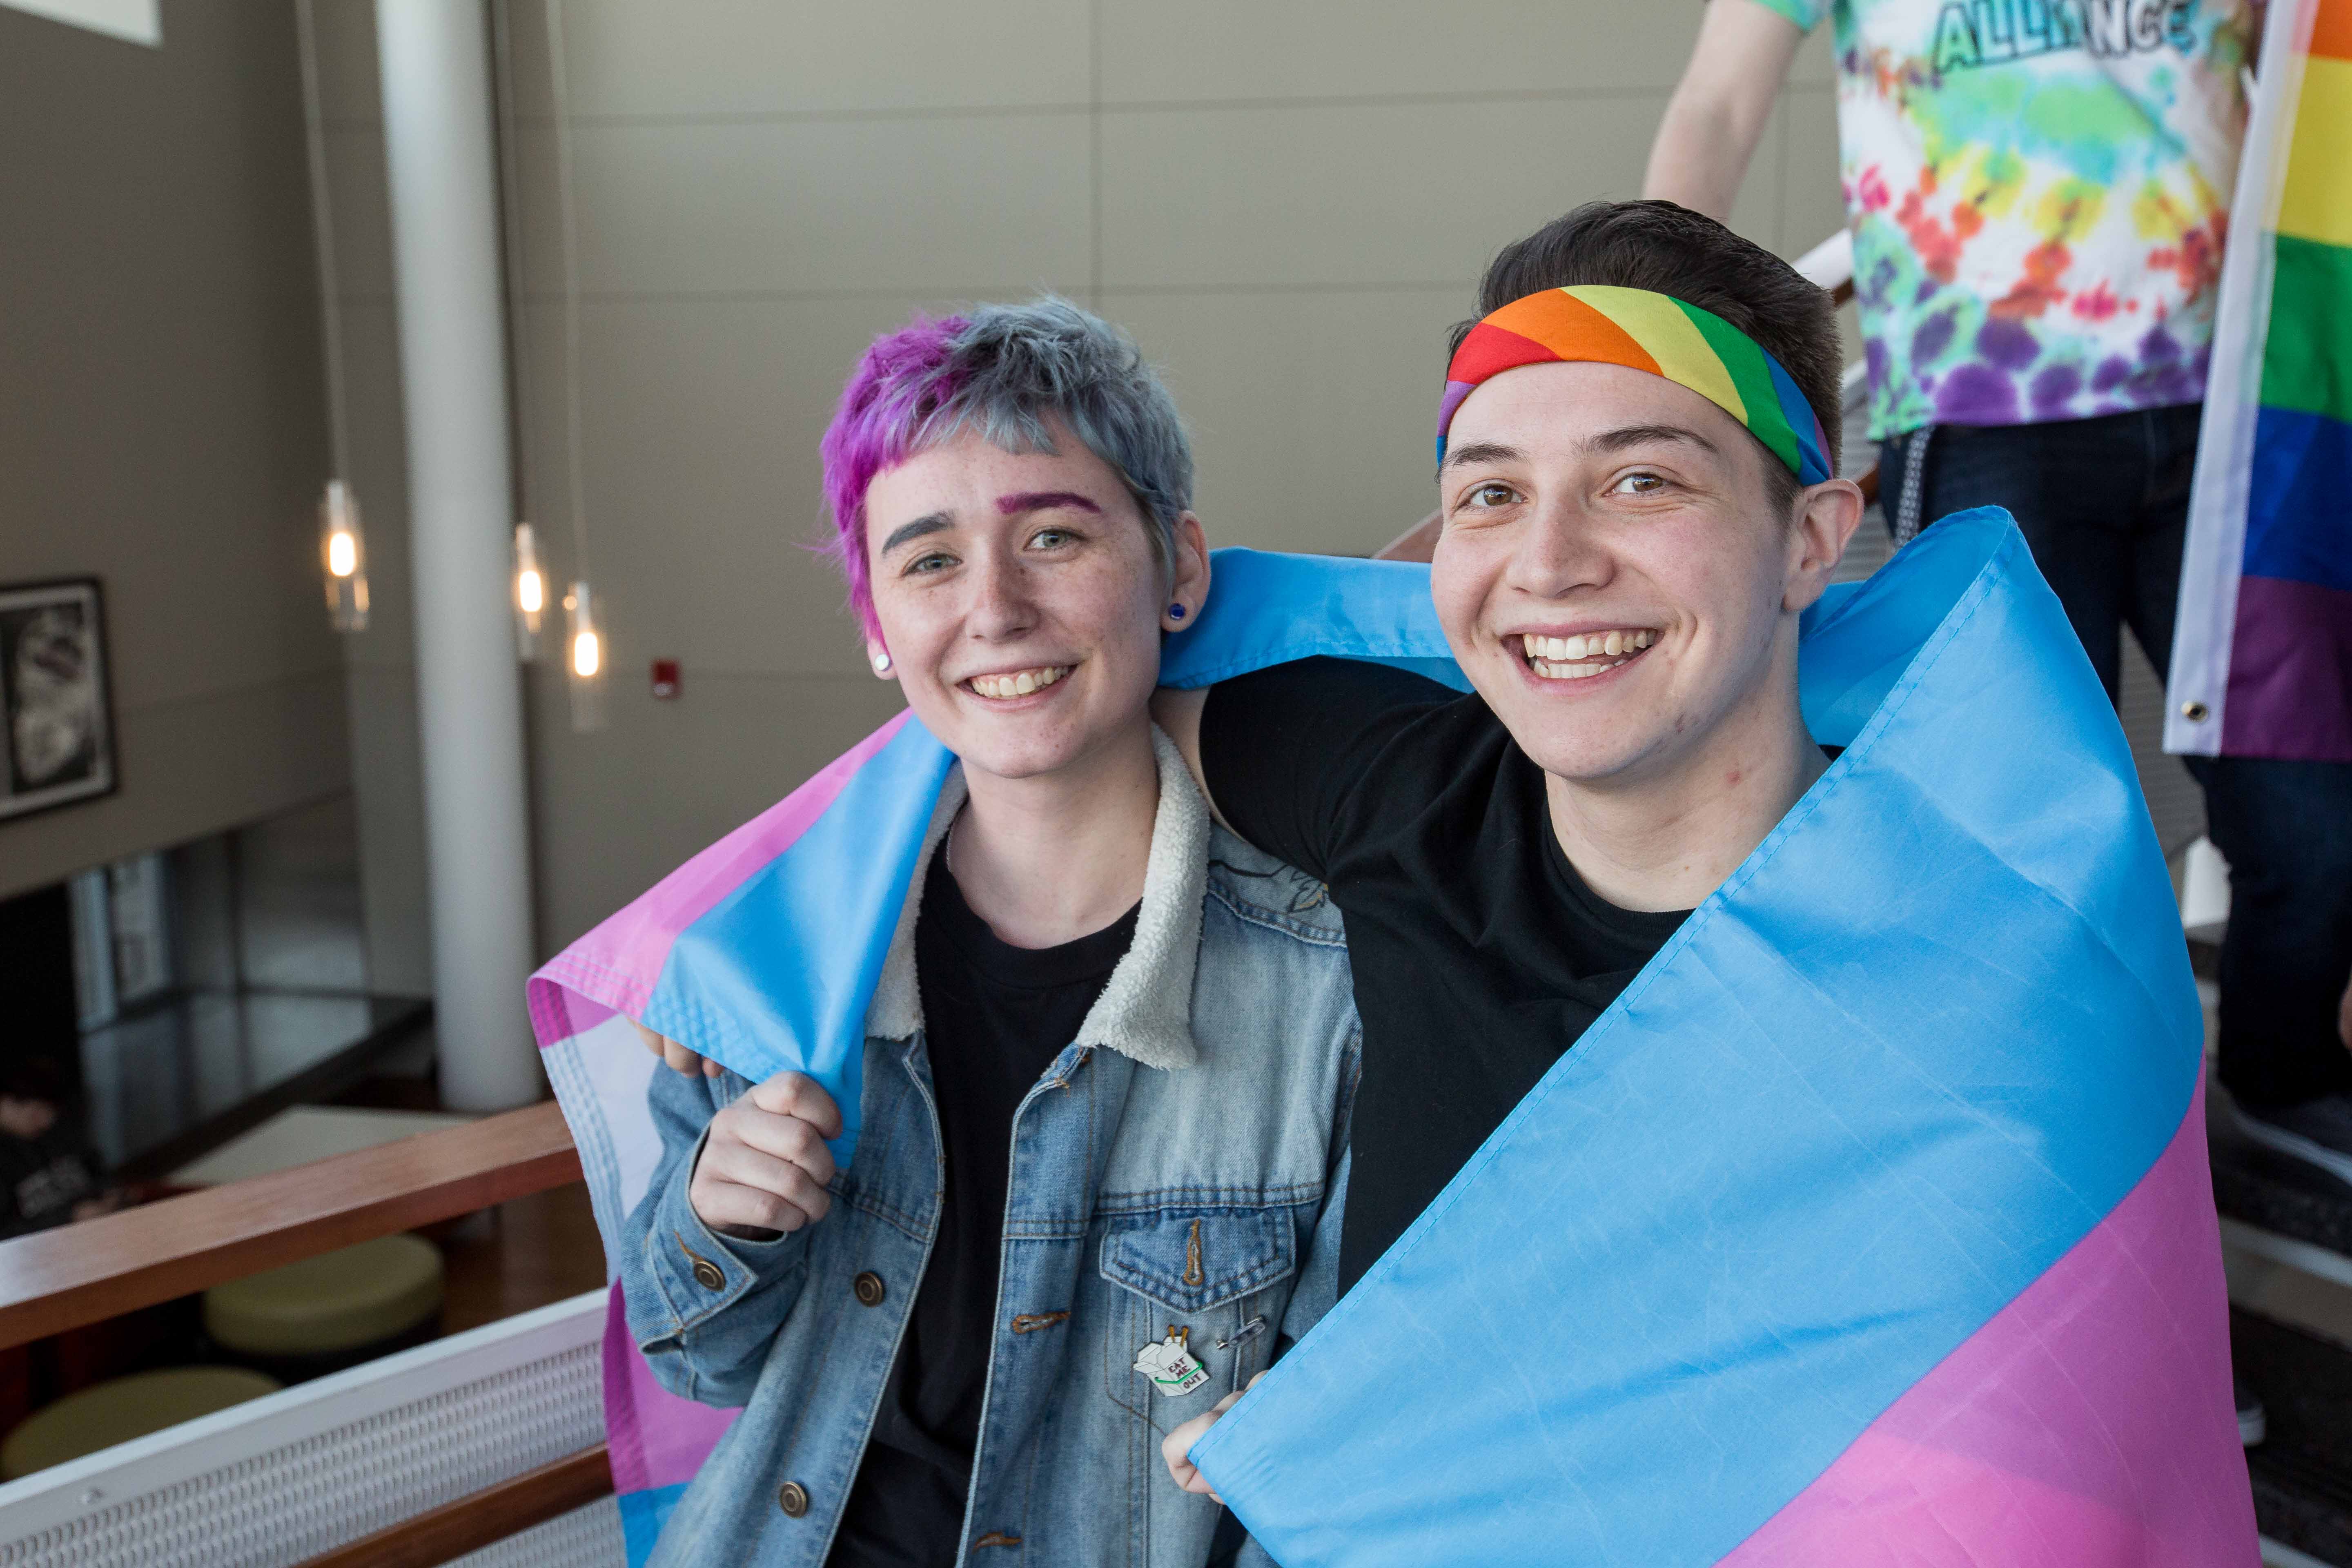 Students wrapped inside transgender flag